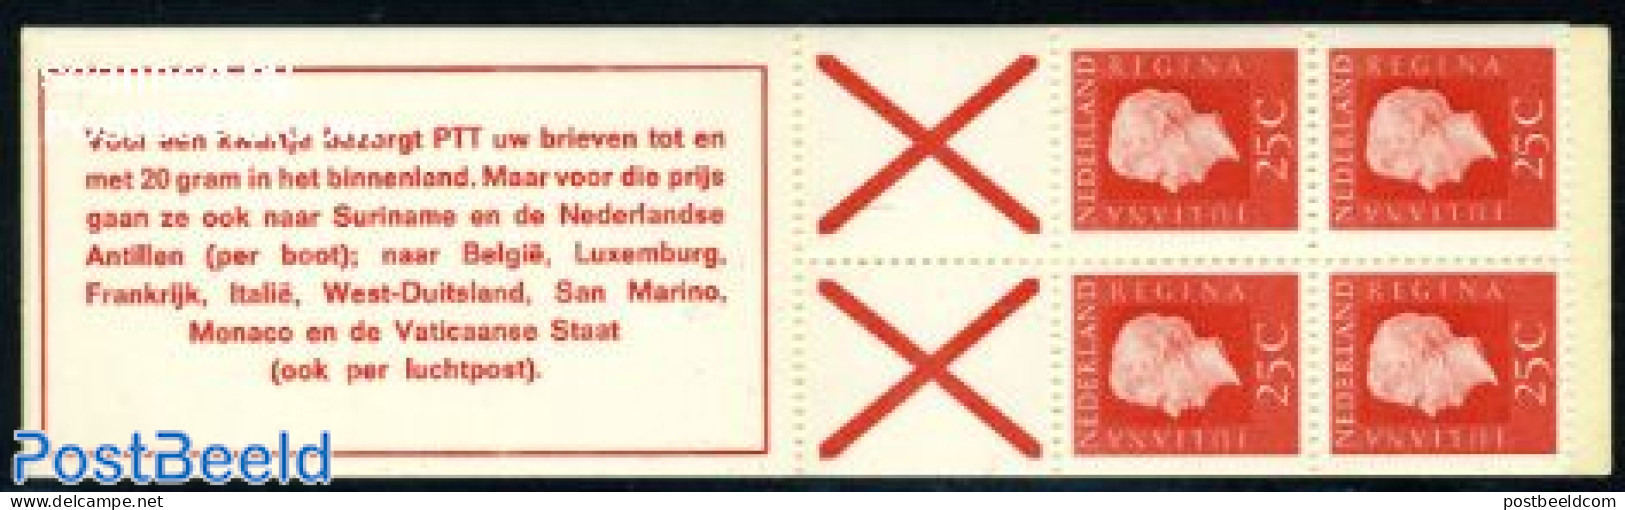 Netherlands 1970 4x25c Booklet, Phosphor, Count Block, Voor Een Kwa, Mint NH, Stamp Booklets - Ongebruikt